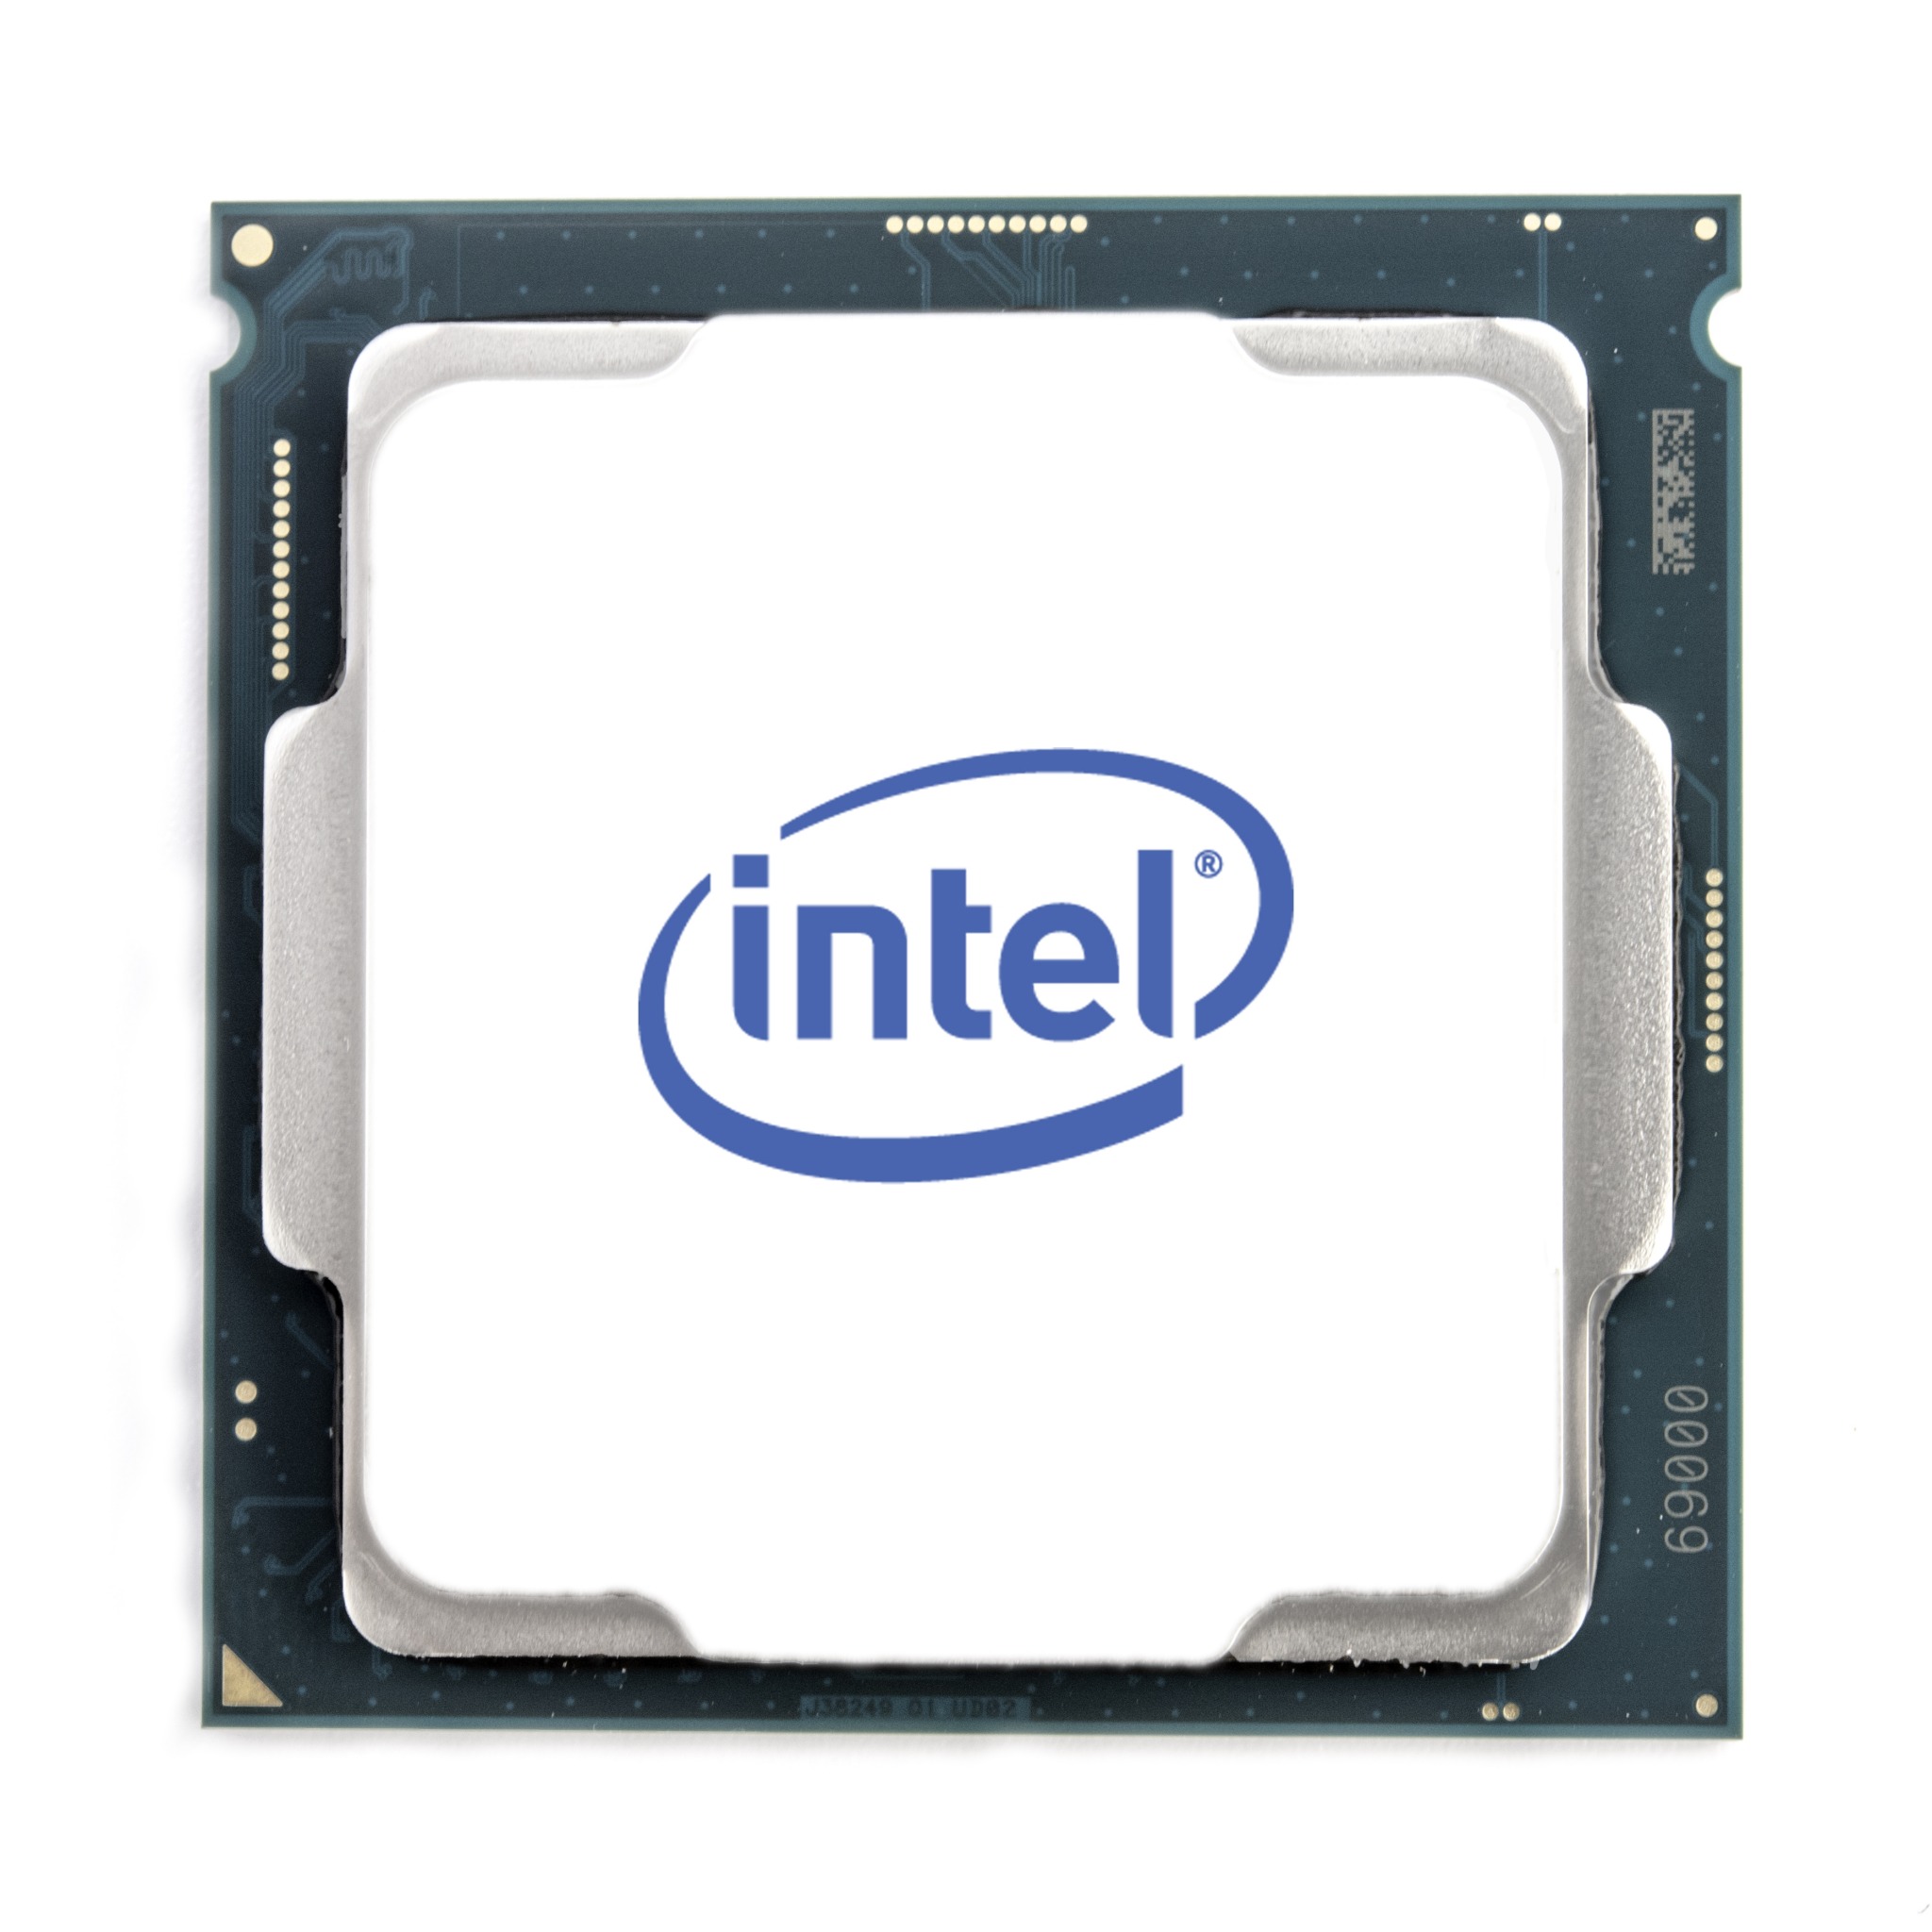 Intel Core i9-10940X 14C/28T 3.3GHz 165W LGA1200 Processor ...